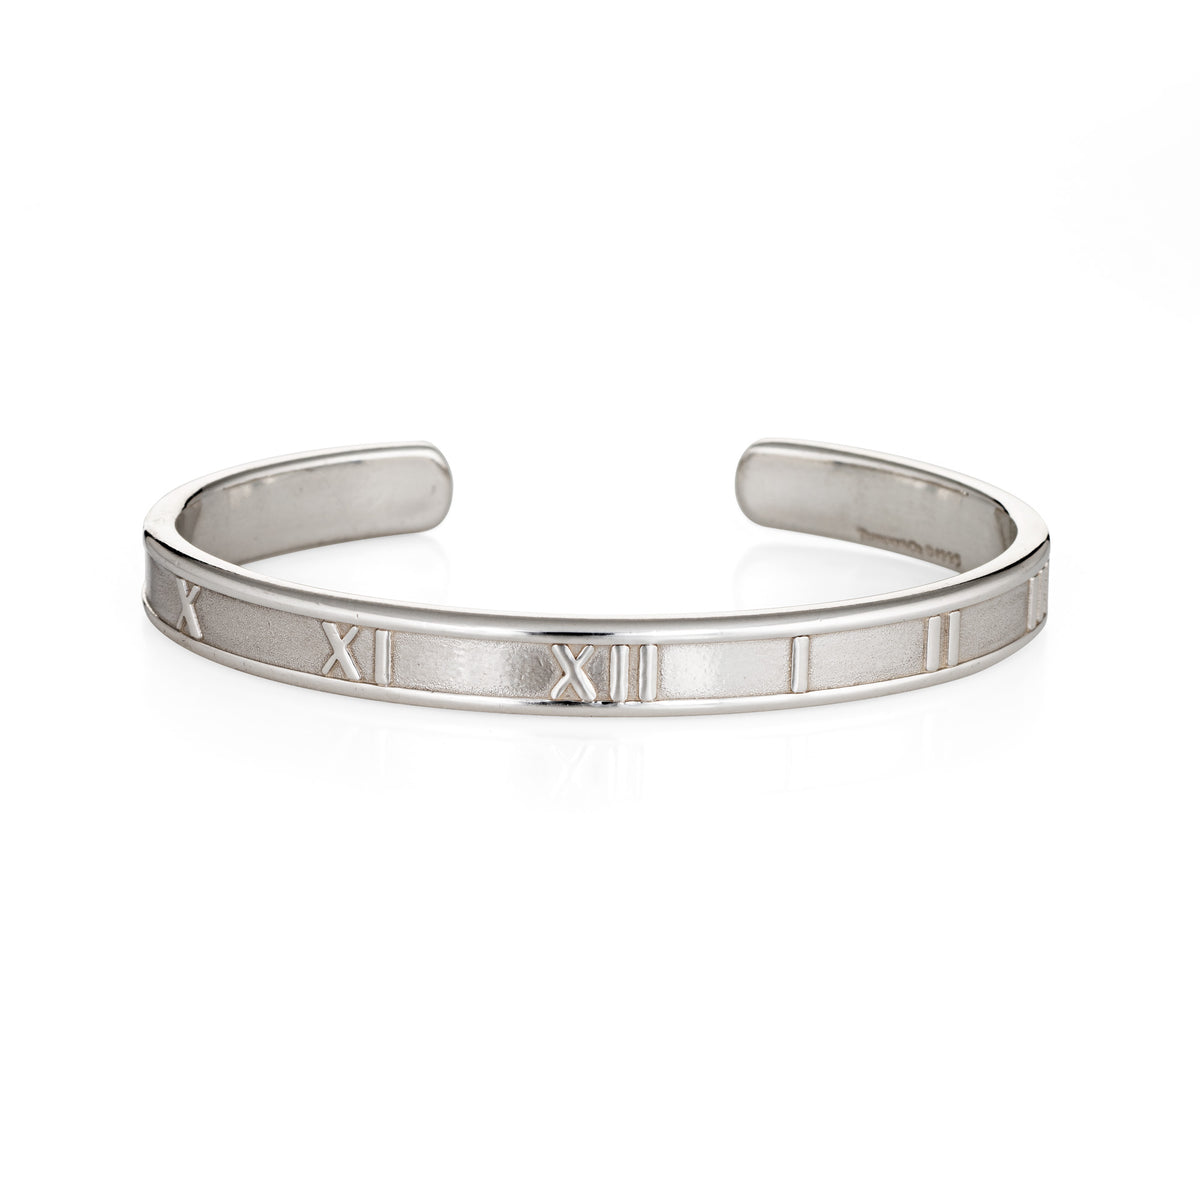 Tiffany & Co Atlas Roman Numerals Cuff Bracelet Small size Silver 925 Bangle